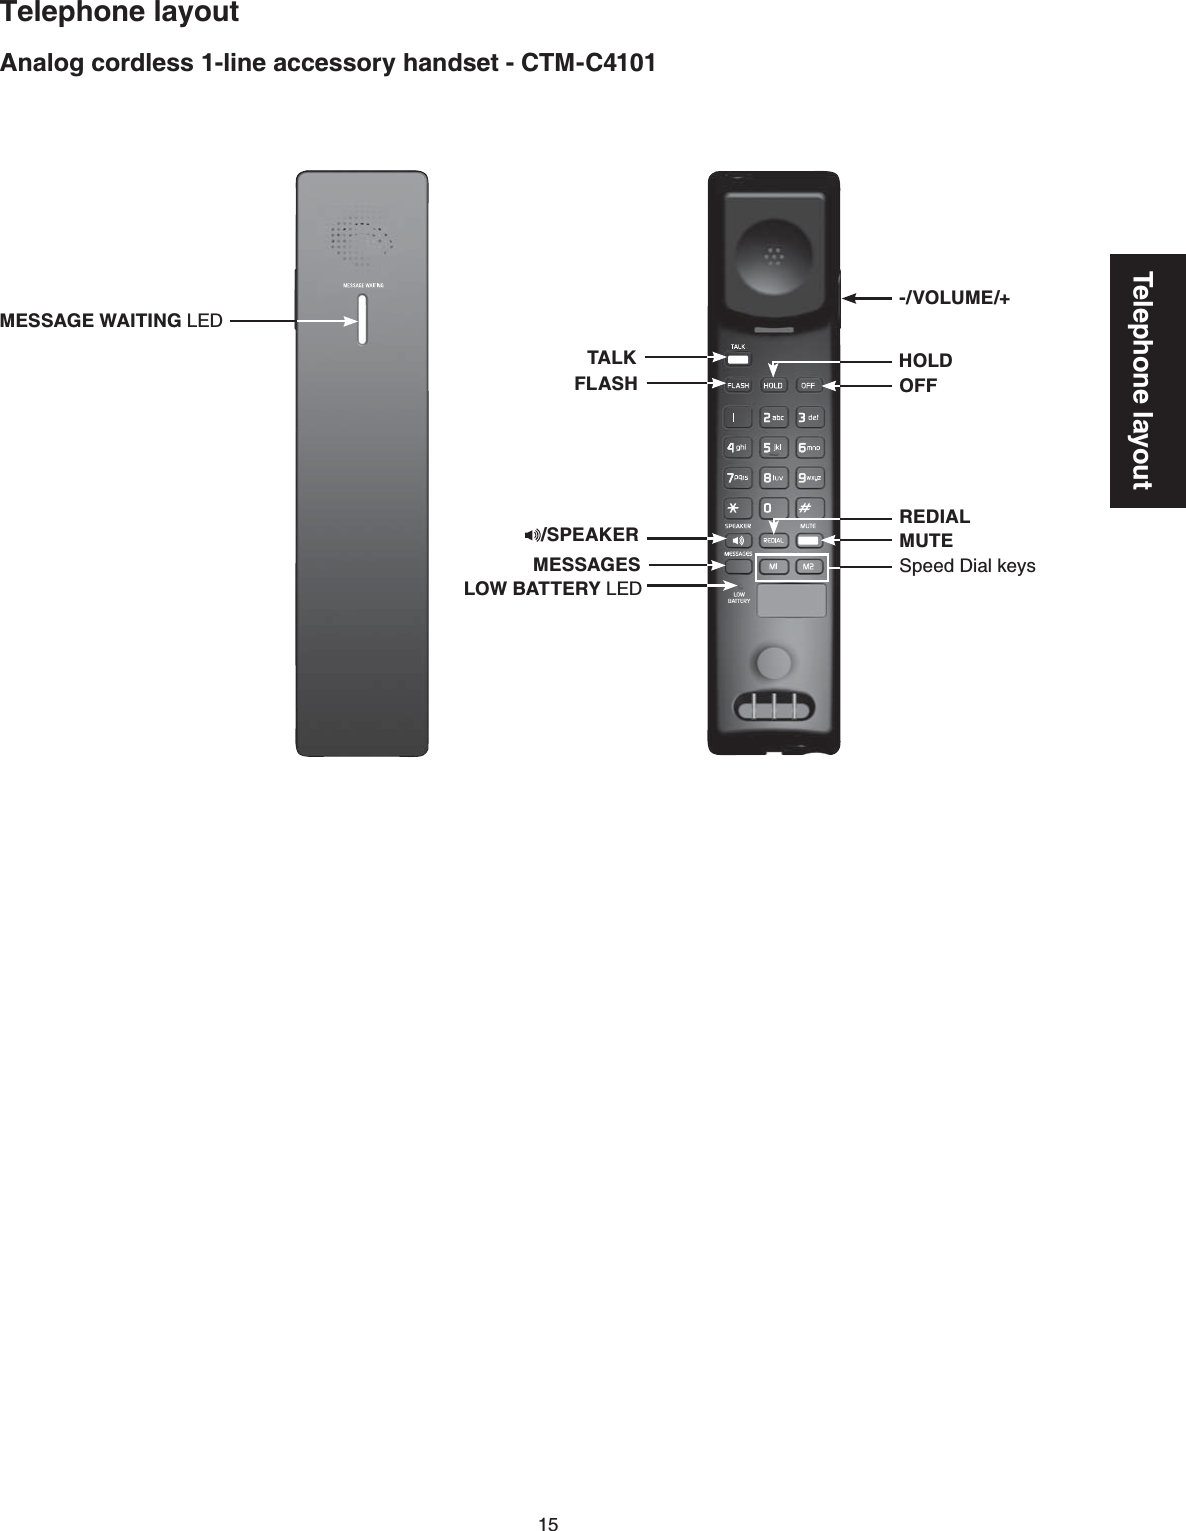 15Telephone layoutTelephone layoutAnalog cordless 1-line accessory handset - CTM-C4101TALKREDIALHOLDOFFFLASHMESSAGESMUTE-/VOLUME/+MESSAGE WAITING LED/SPEAKERLOW BATTERY LEDSpeed Dial keys